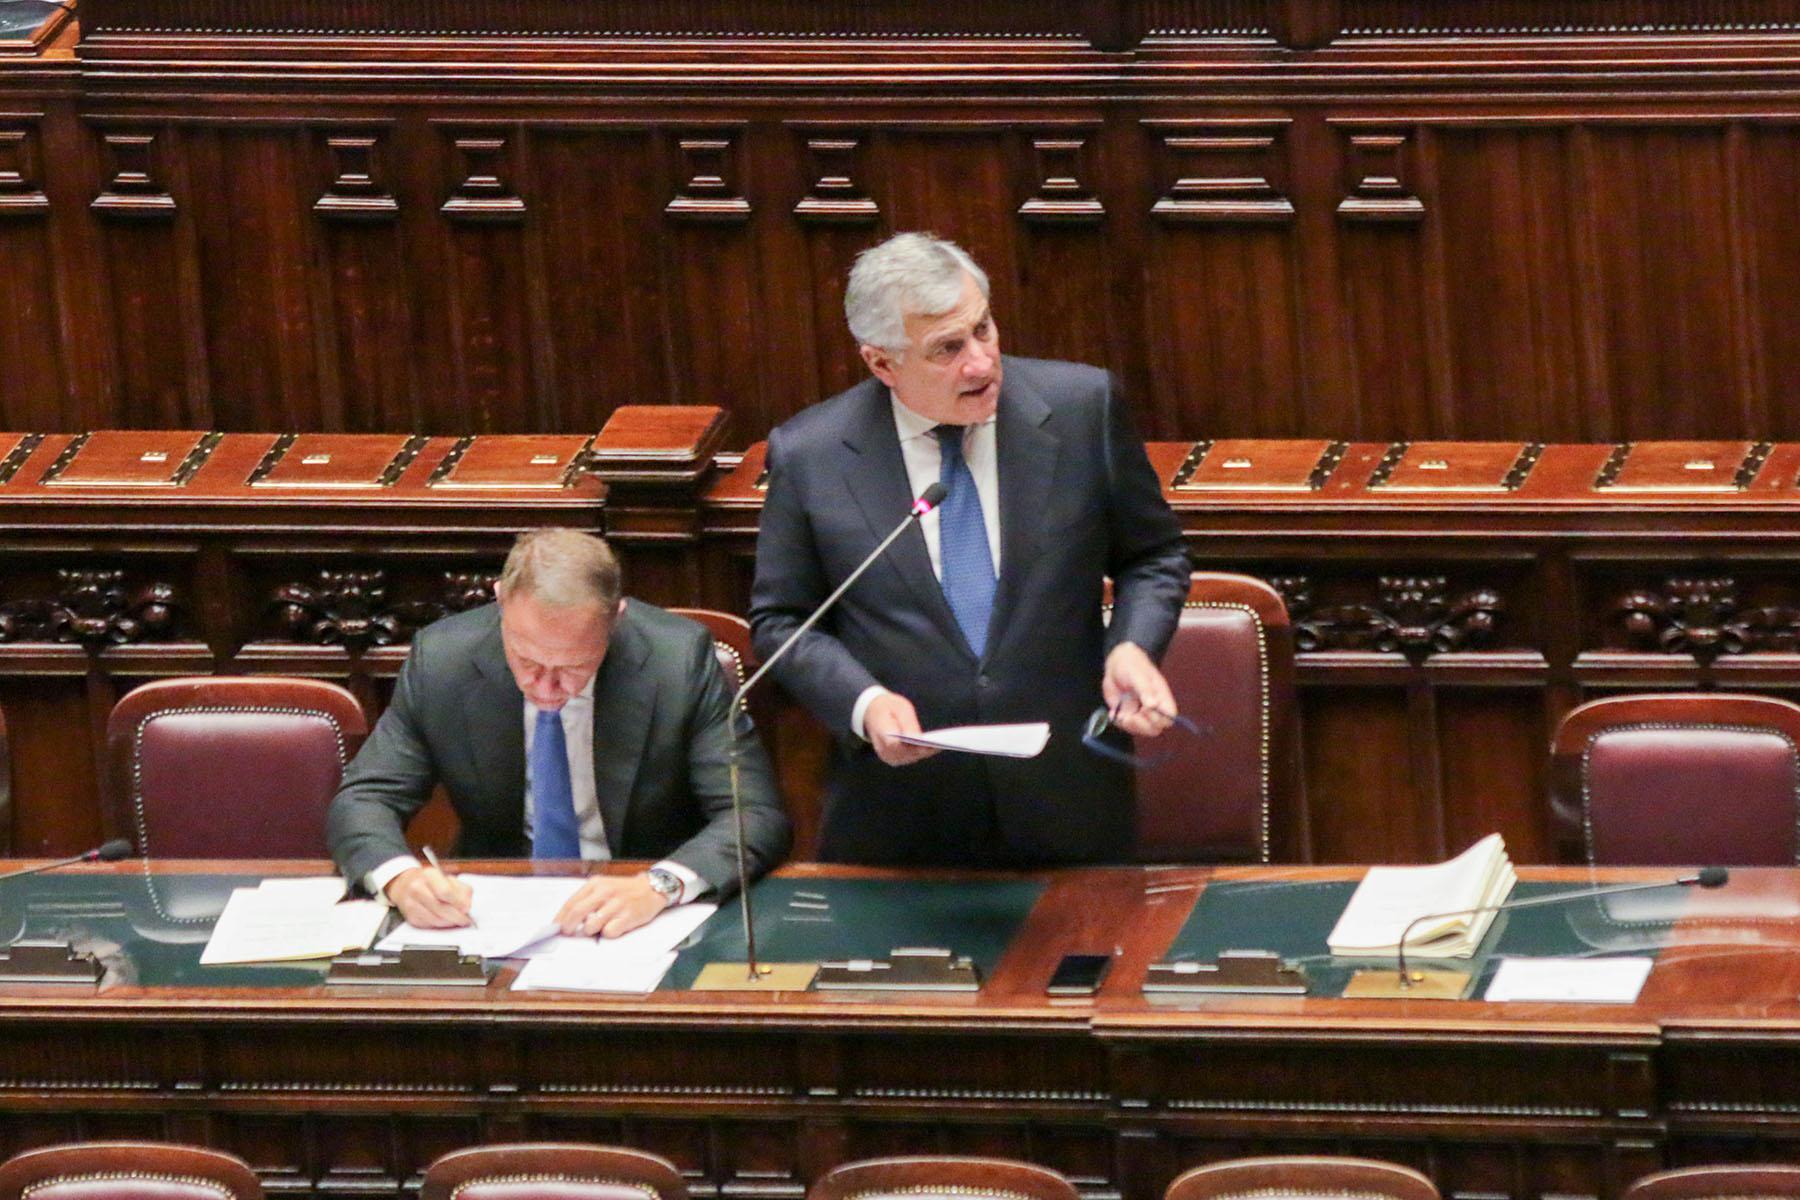 Intervento del Ministro degli Affari esteri e della cooperazione internazionale Antonio Tajani